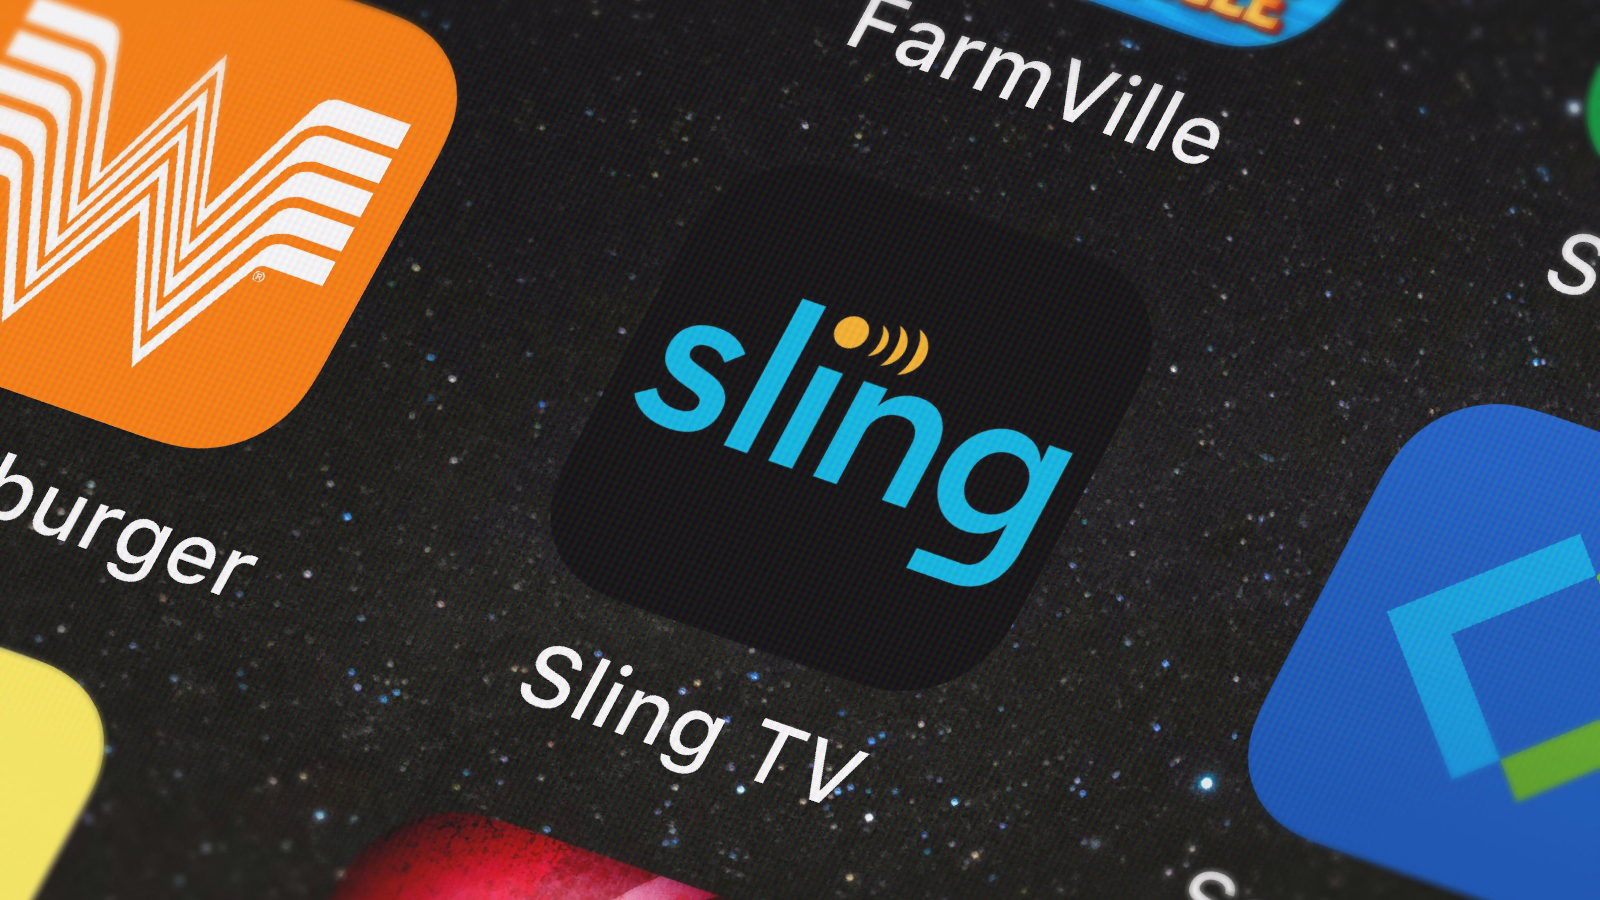 sling tv app for mac help